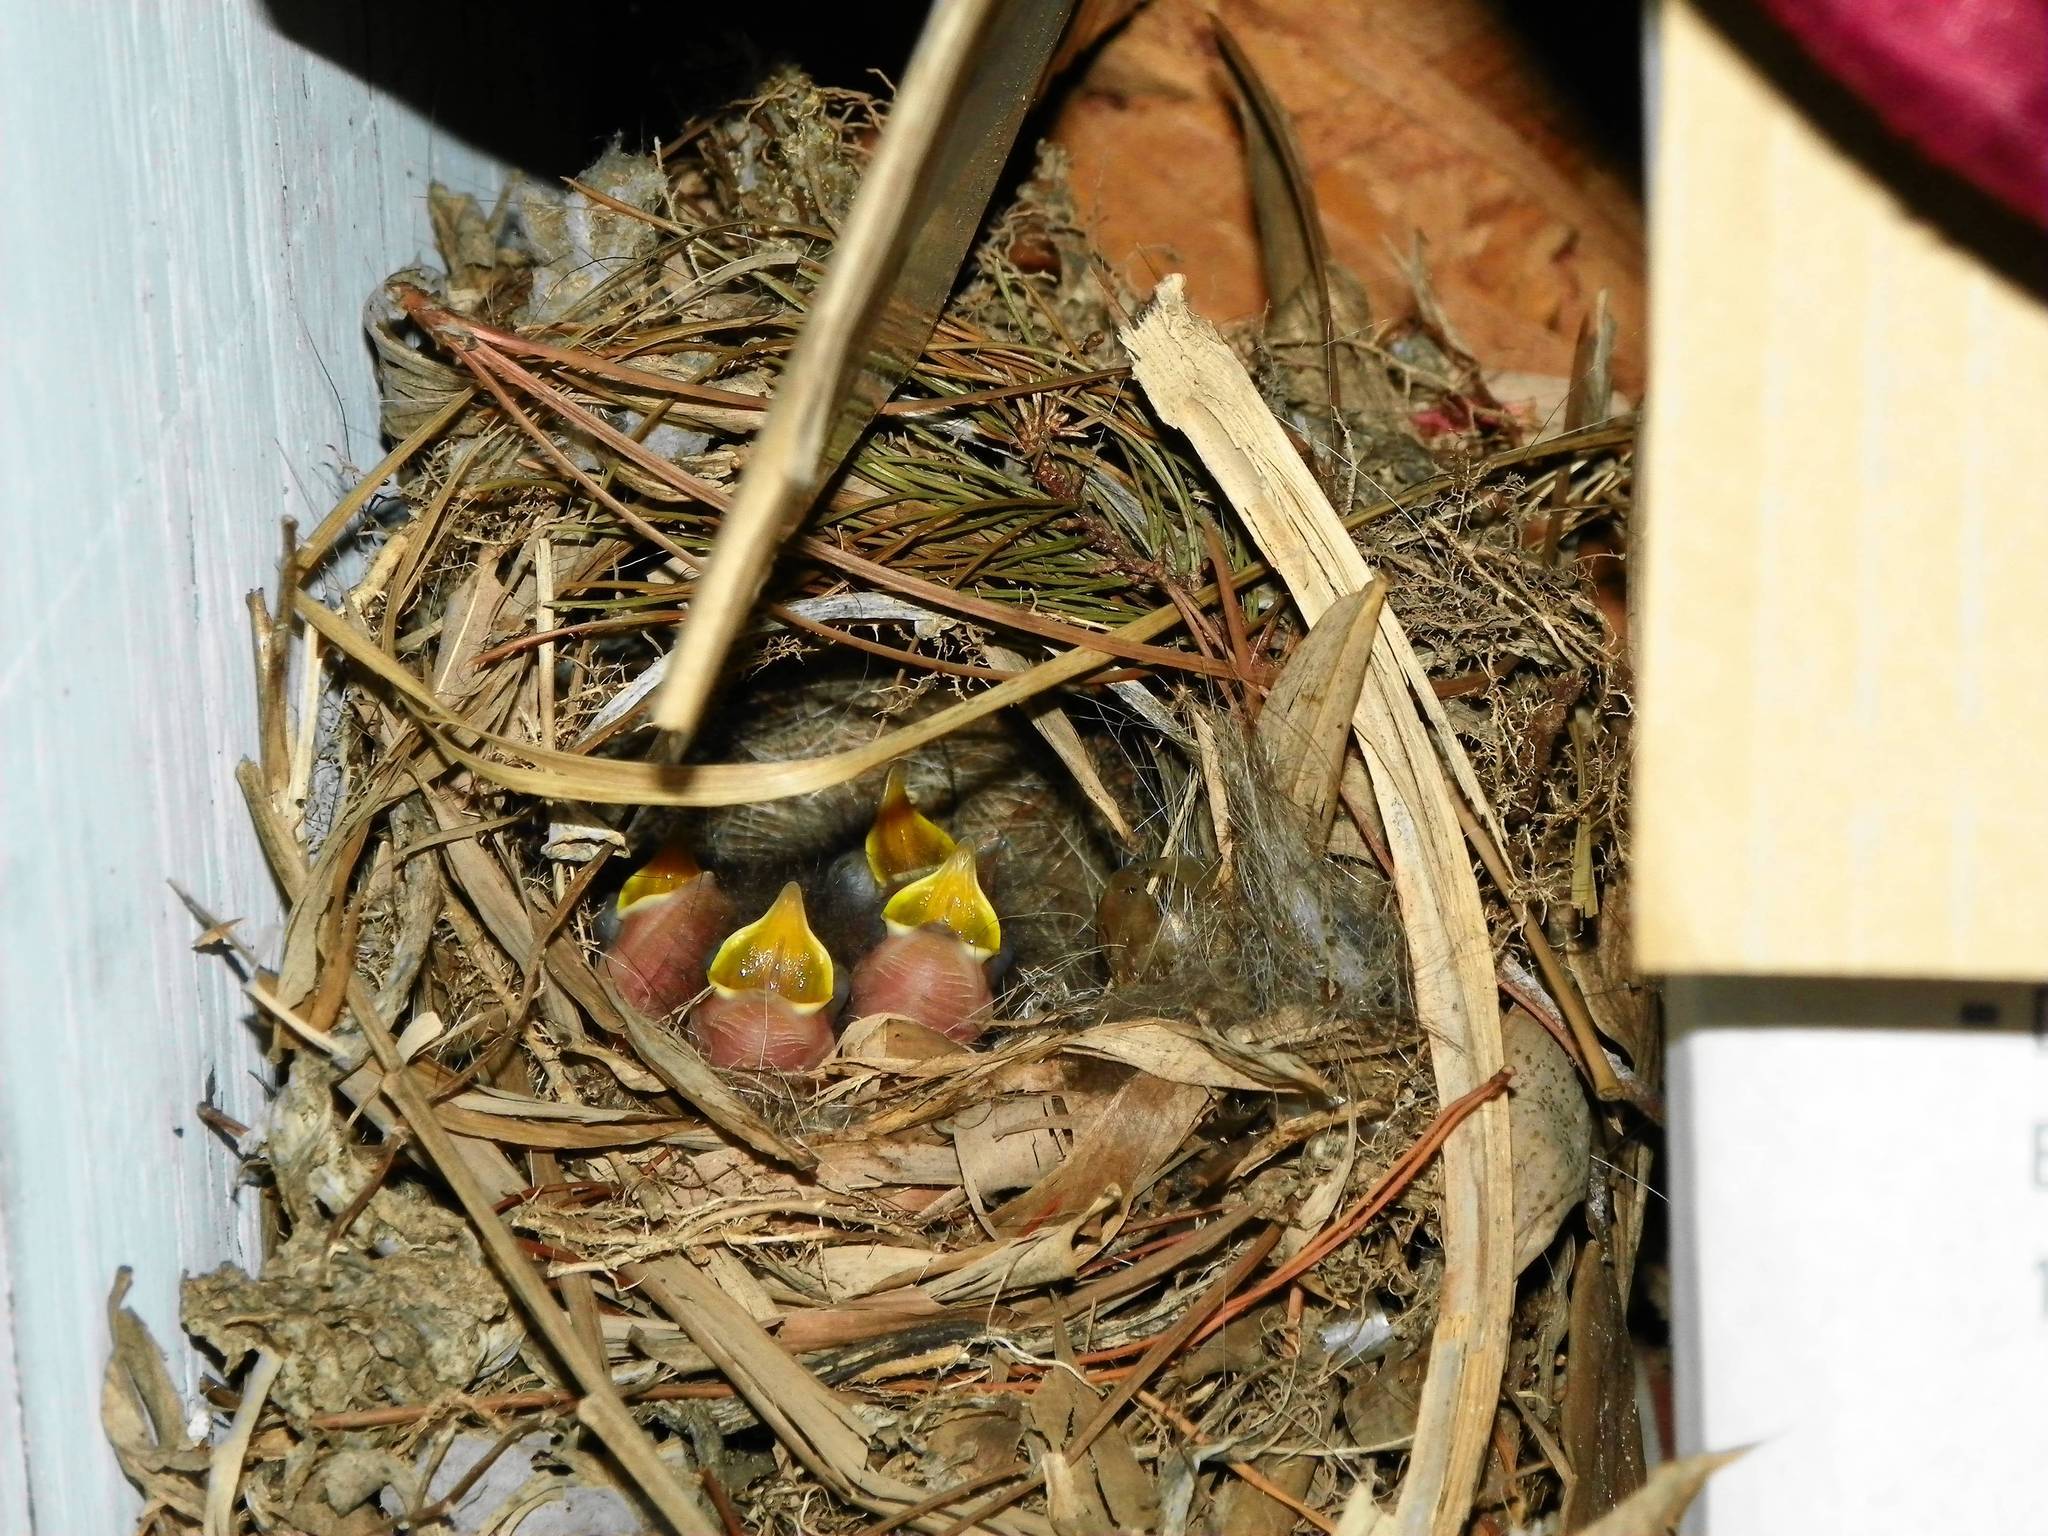 Bird nest garage: Bird nest in garage can cause excitement ...